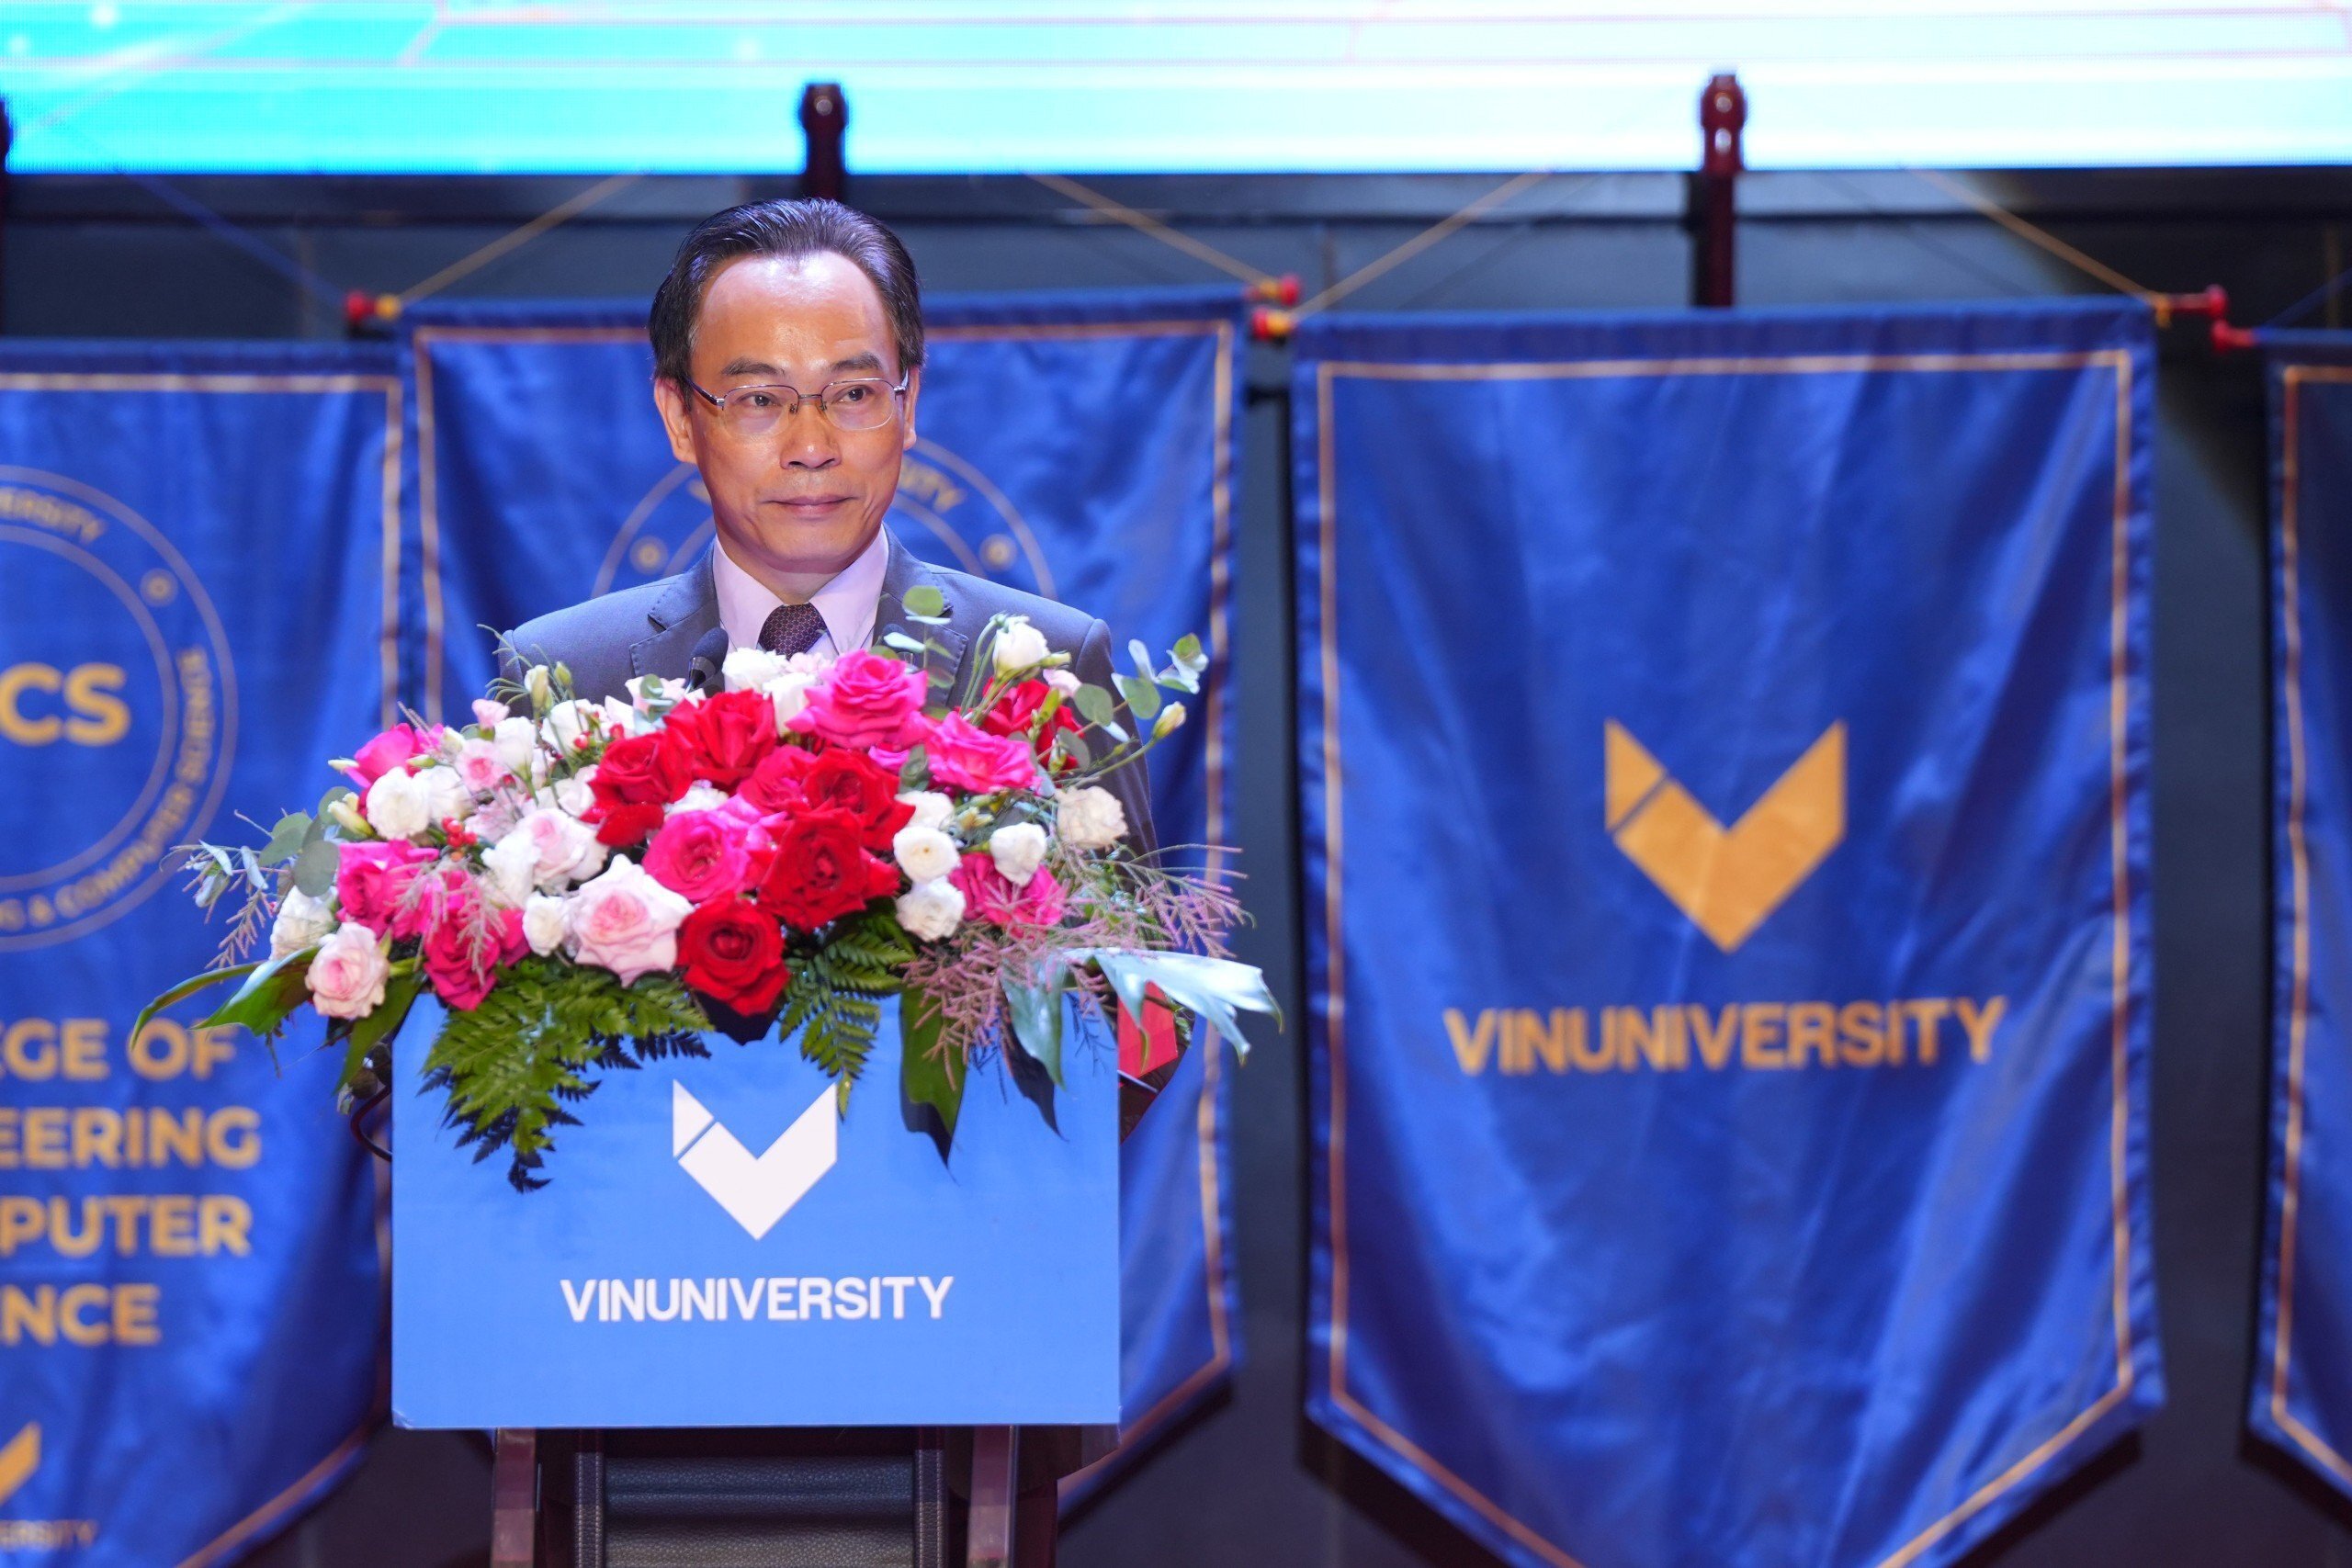 Ghi nhận sự đóng góp của một trường đại học tư thục dù còn non trẻ trong sự phát triển chung của giáo dục đại học Việt Nam, Thứ trưởng Bộ GD&ĐT, PGS.TS Hoàng Minh Sơn chúc mừng những thành quả mà VinUni đã đạt được.